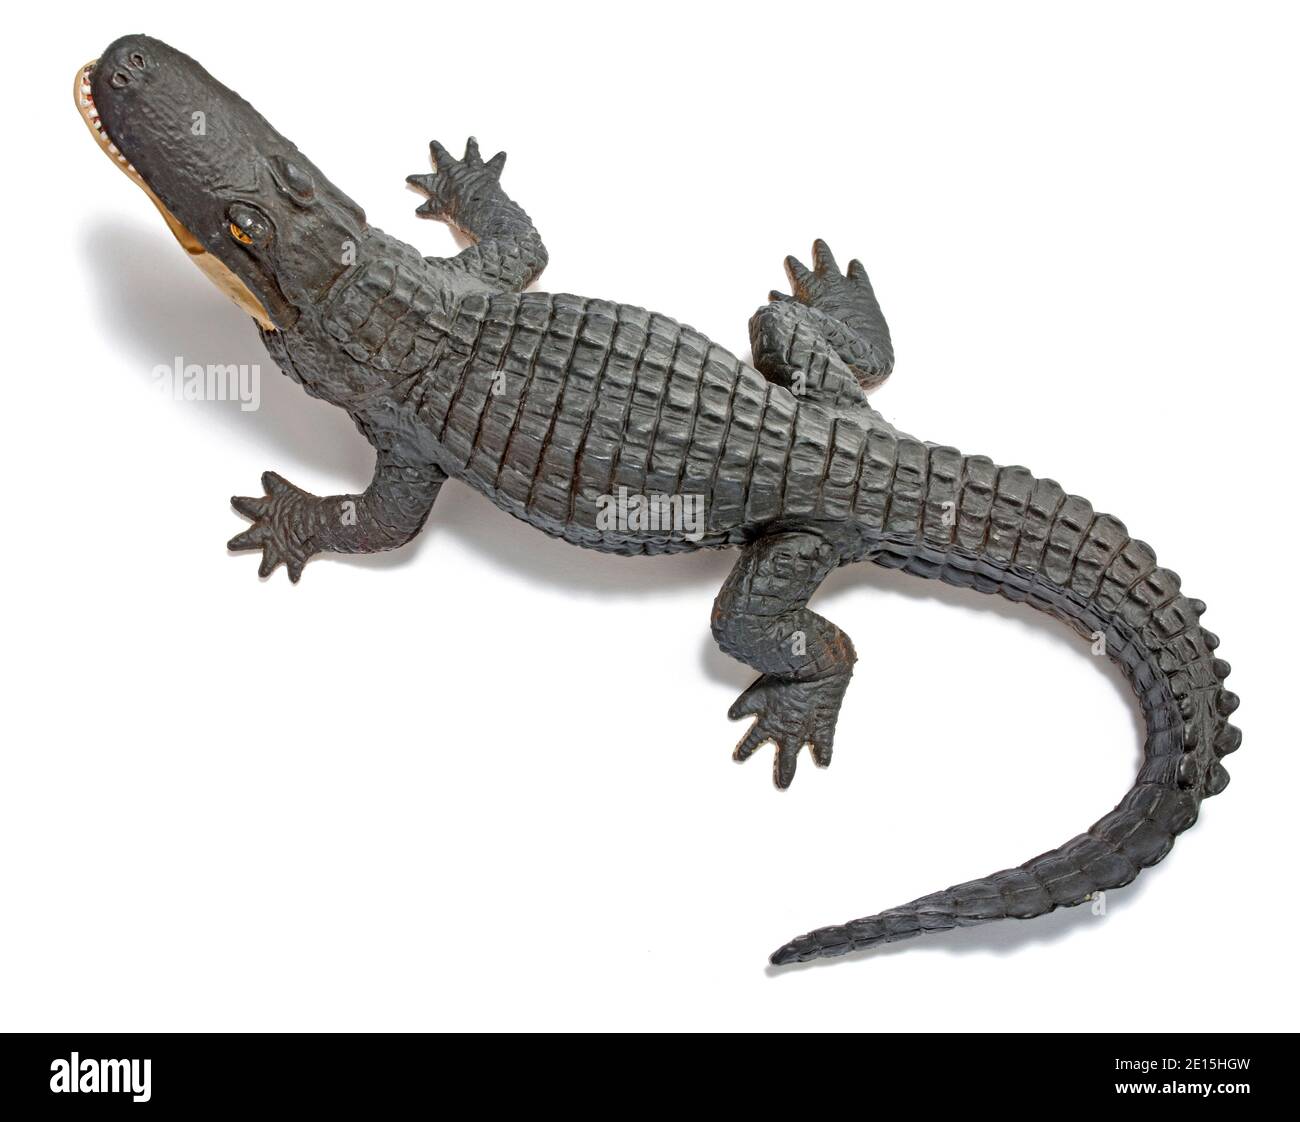 Giocattolo in gomma con alligatore fotografato su sfondo bianco Foto Stock